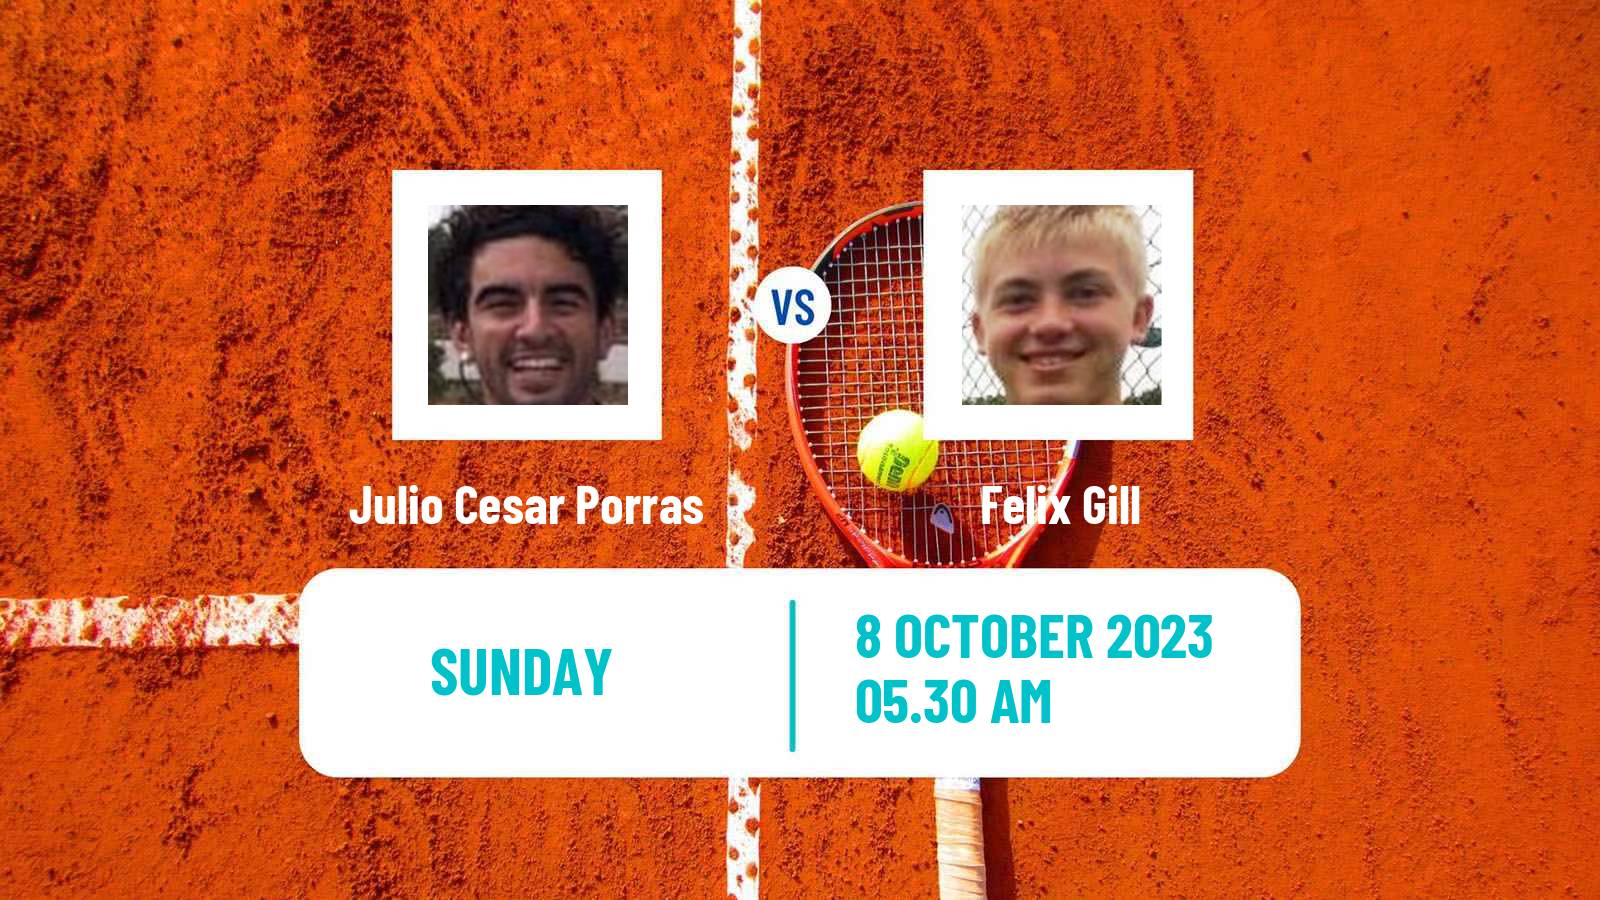 Tennis ITF M25 Zaragoza Men Julio Cesar Porras - Felix Gill